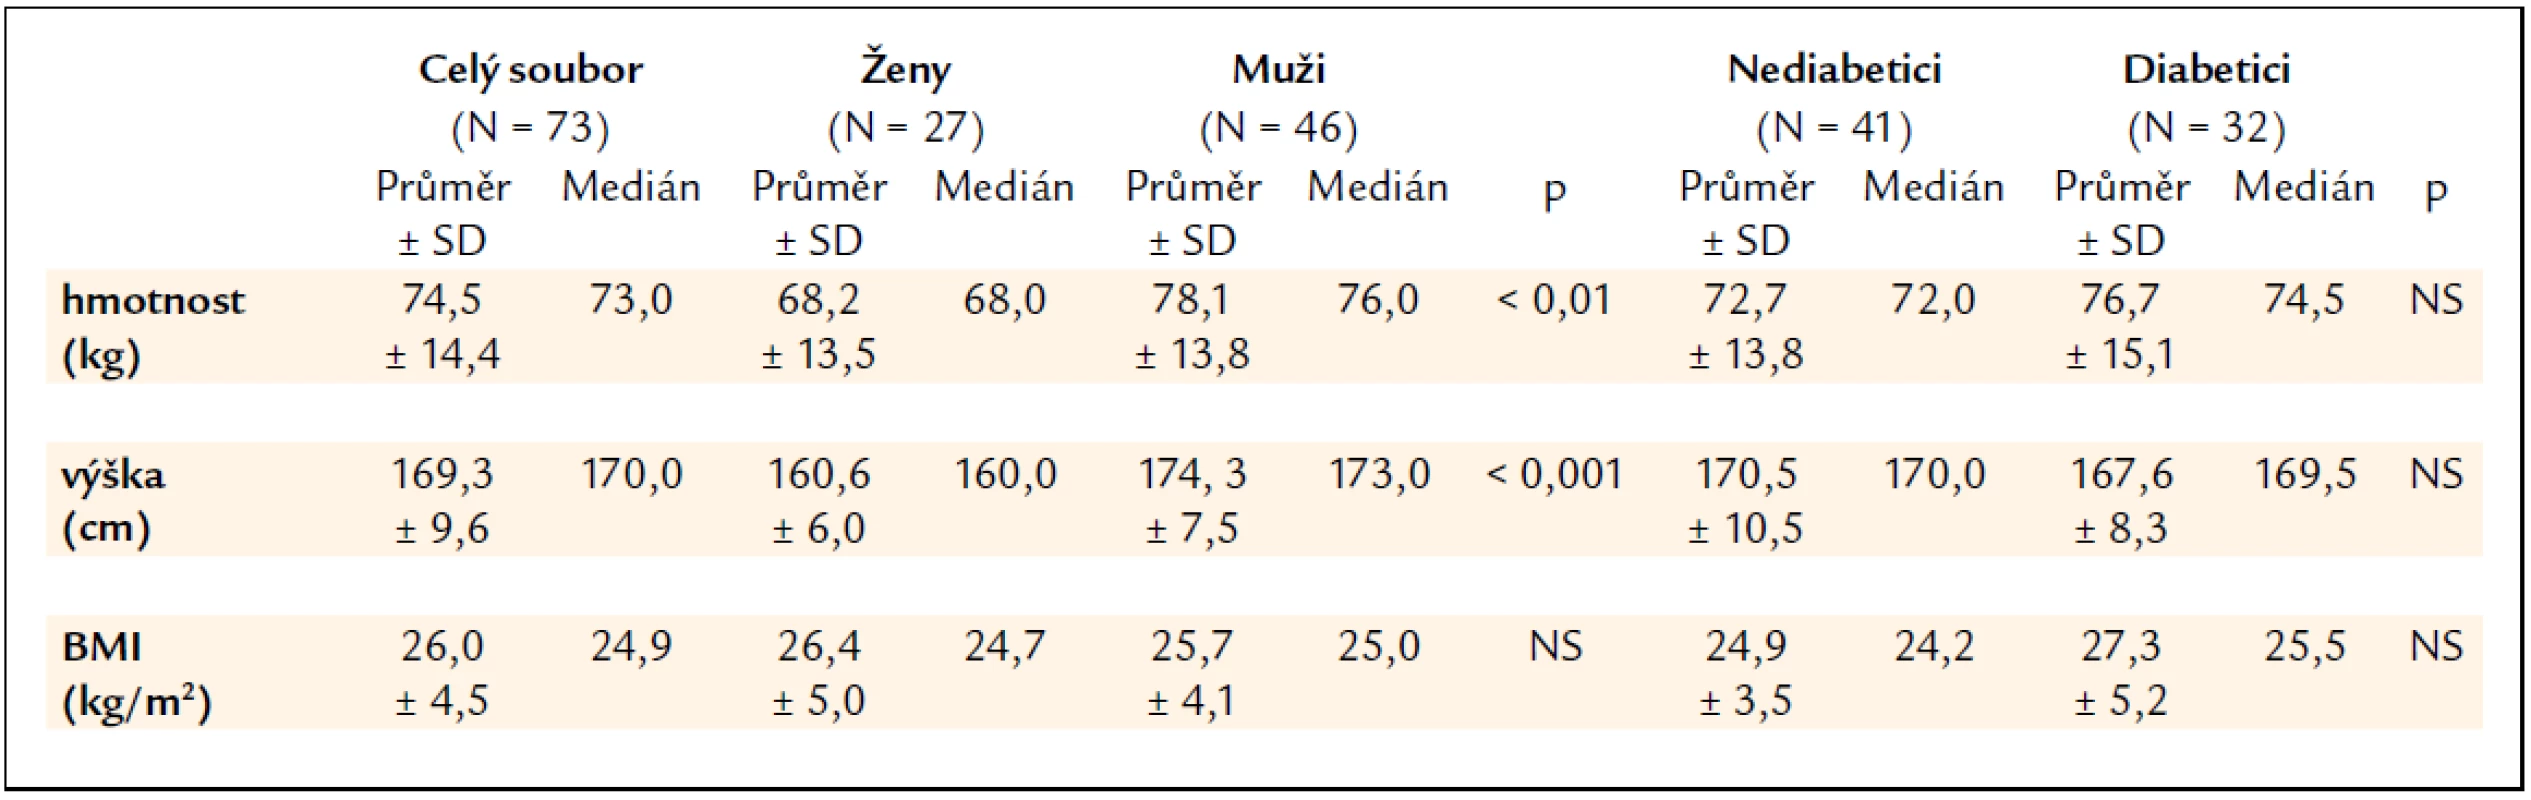 Charakteristika souboru nemocných dle hmotnosti, výšky a body mass indexu (BMI).